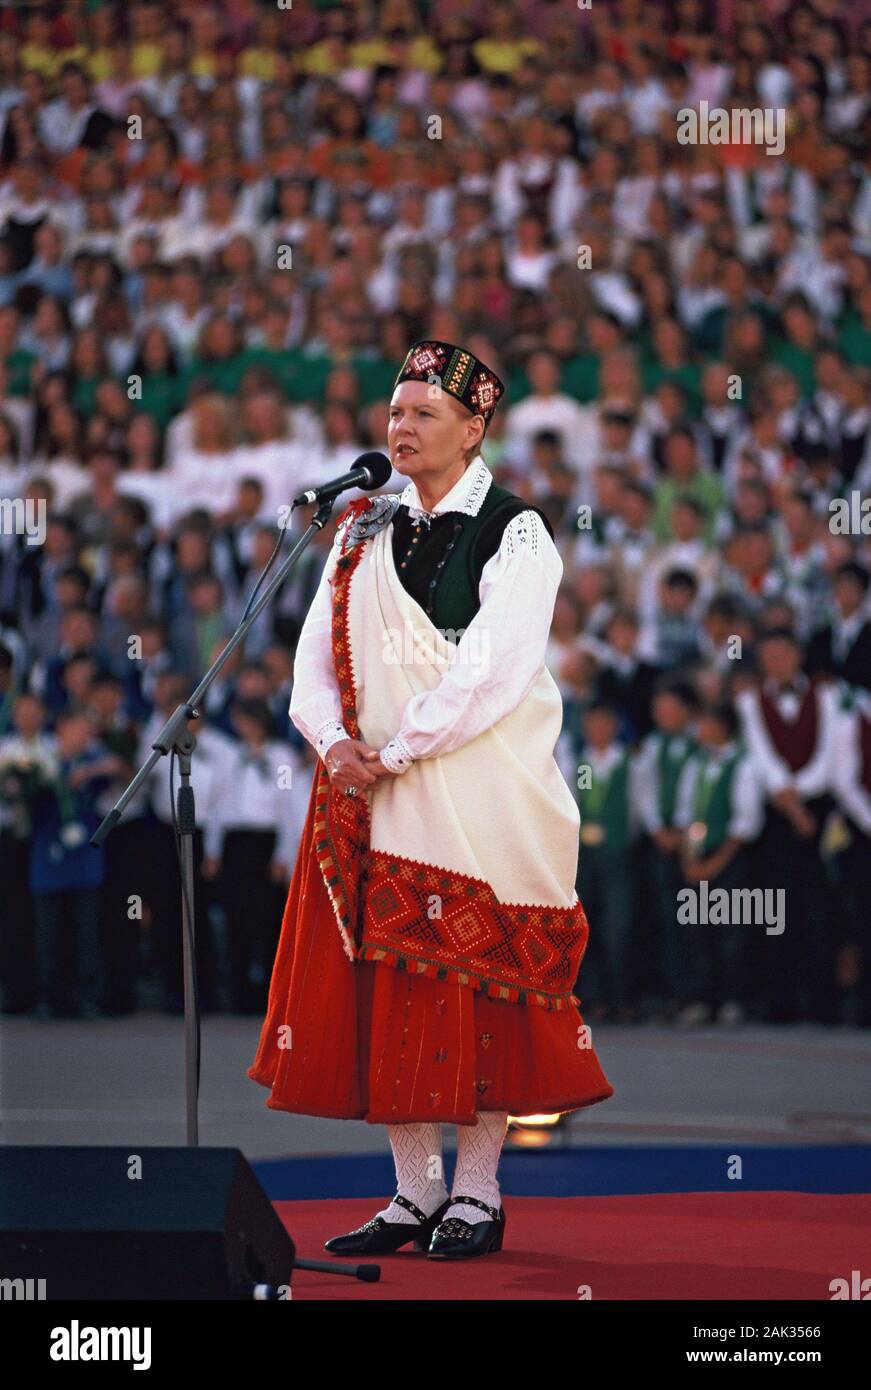 La photo montre le président de la République de Lettonie, Vaira  Vike-Freiberga (né le 01.12.1937 à Riga) dans un costume à la songfestival  à Riga. (Unda Photo Stock - Alamy